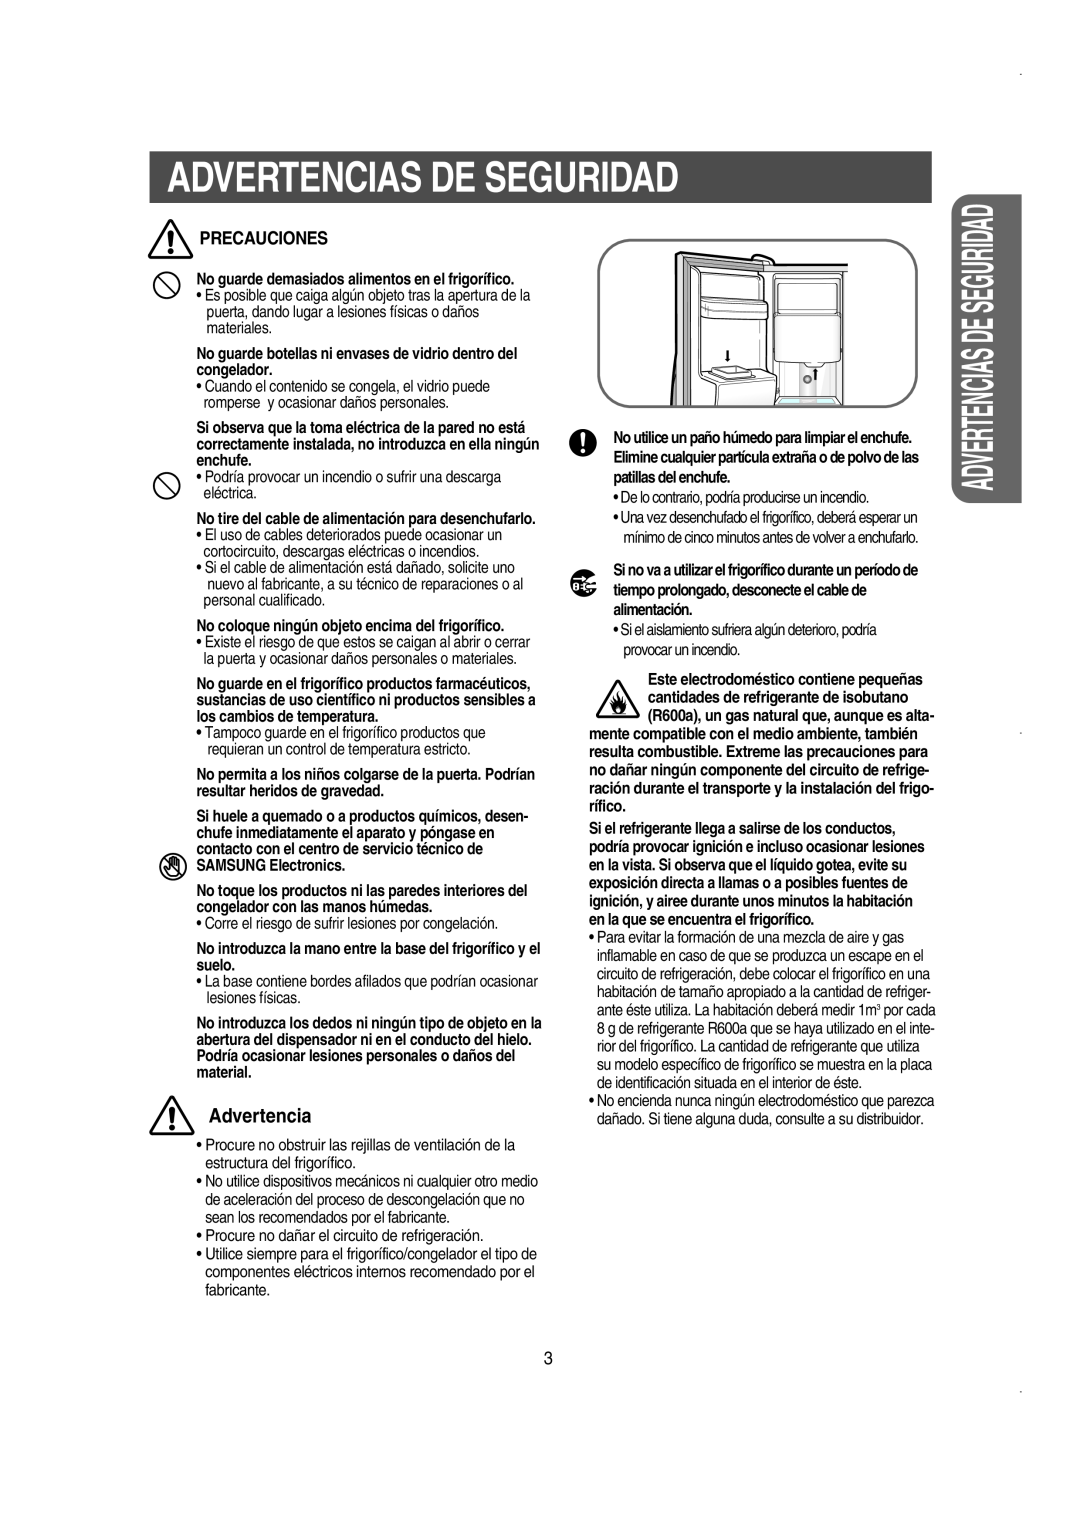 Samsung RS21NCSW1/XES manual Precauciones, Advertencias De Seguridad, No coloque ningún objeto encima del frigorífico 